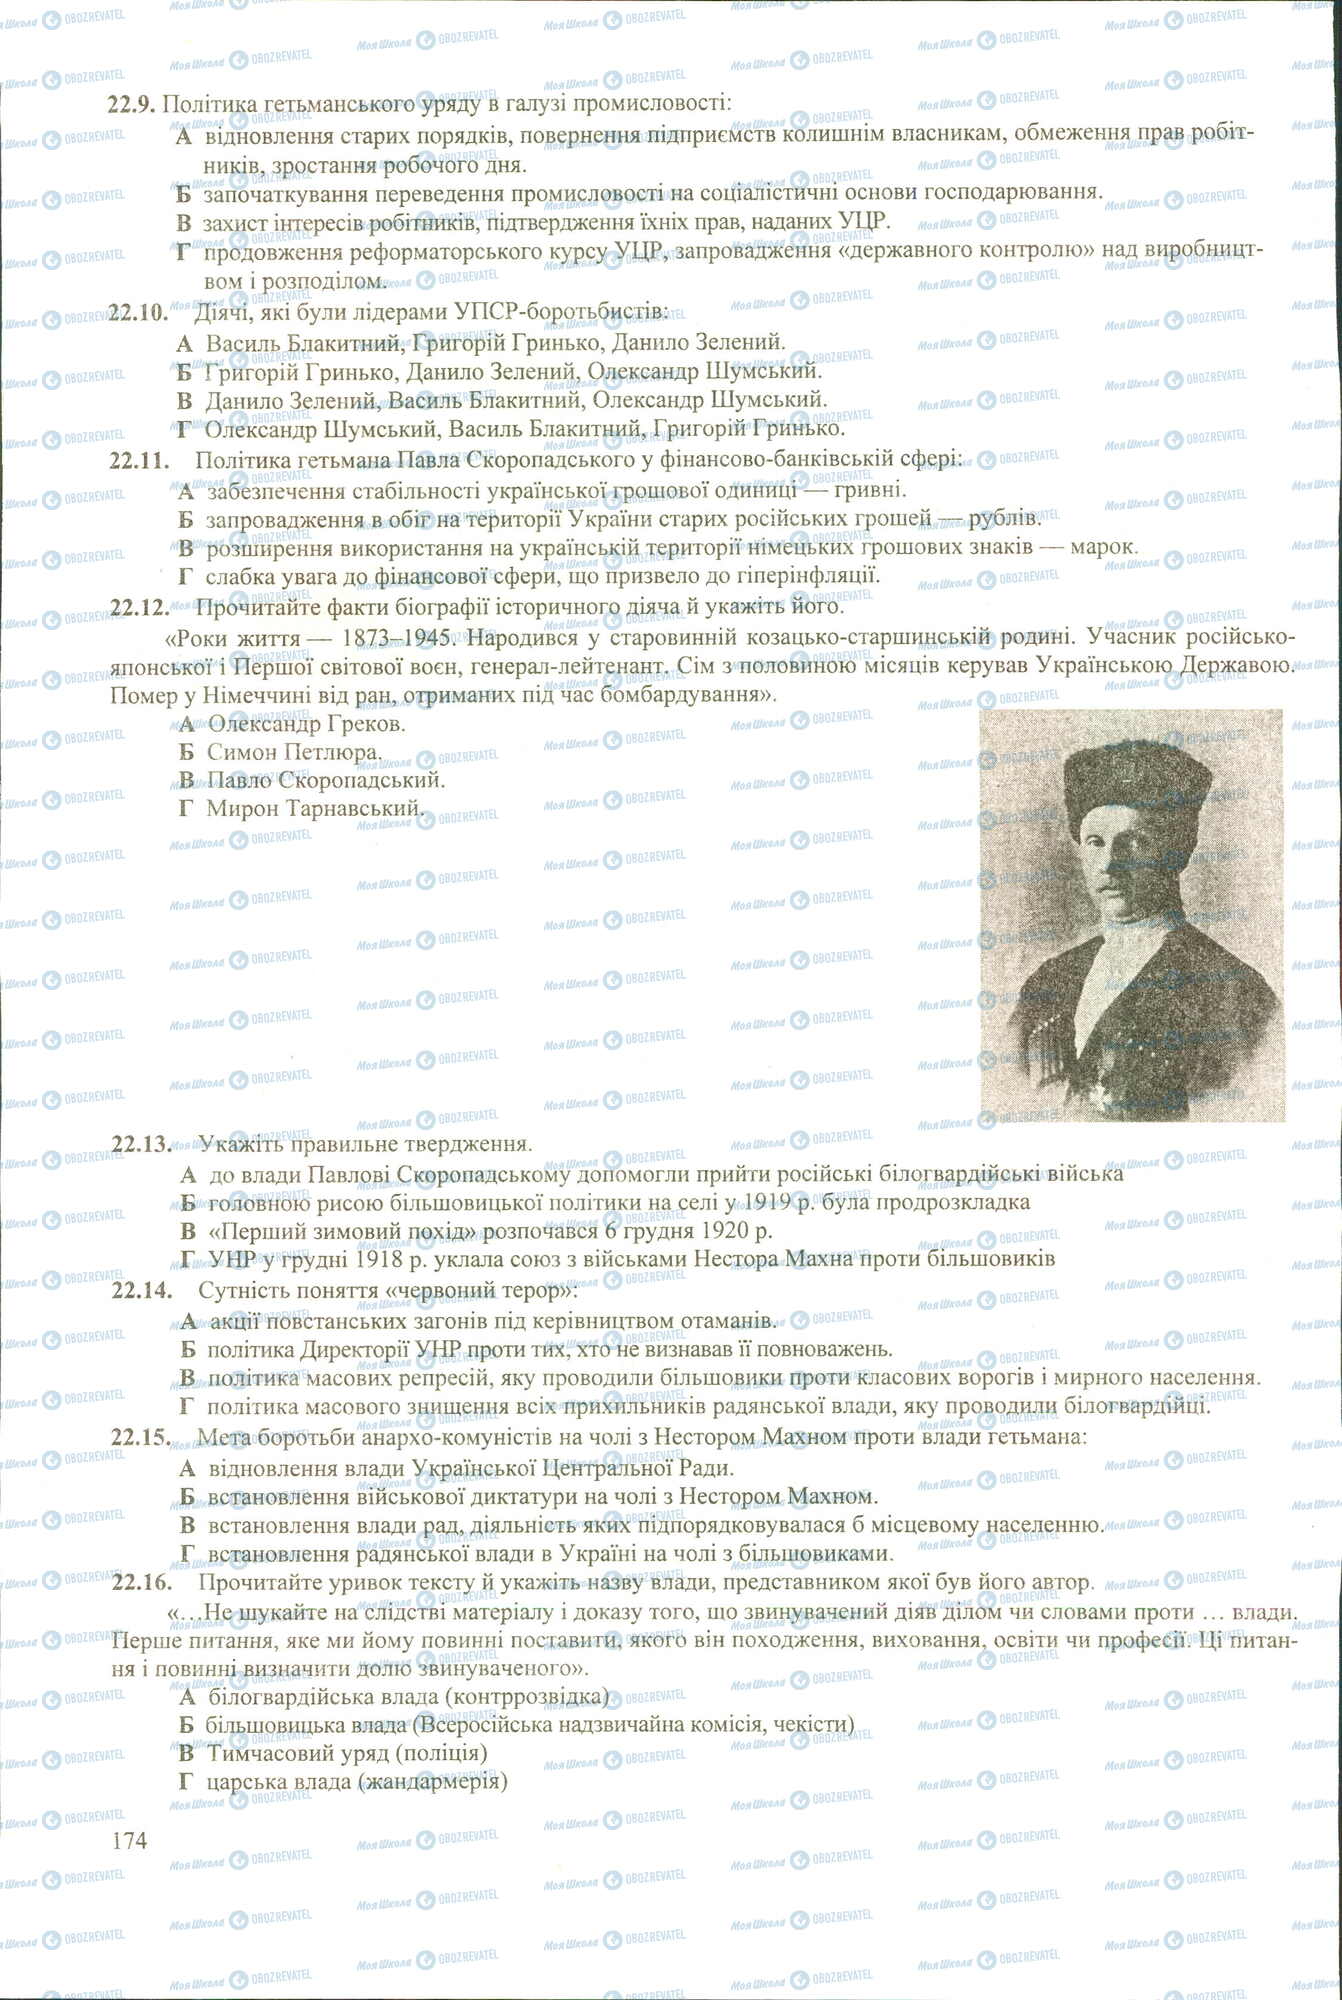 ЗНО История Украины 11 класс страница 9-16